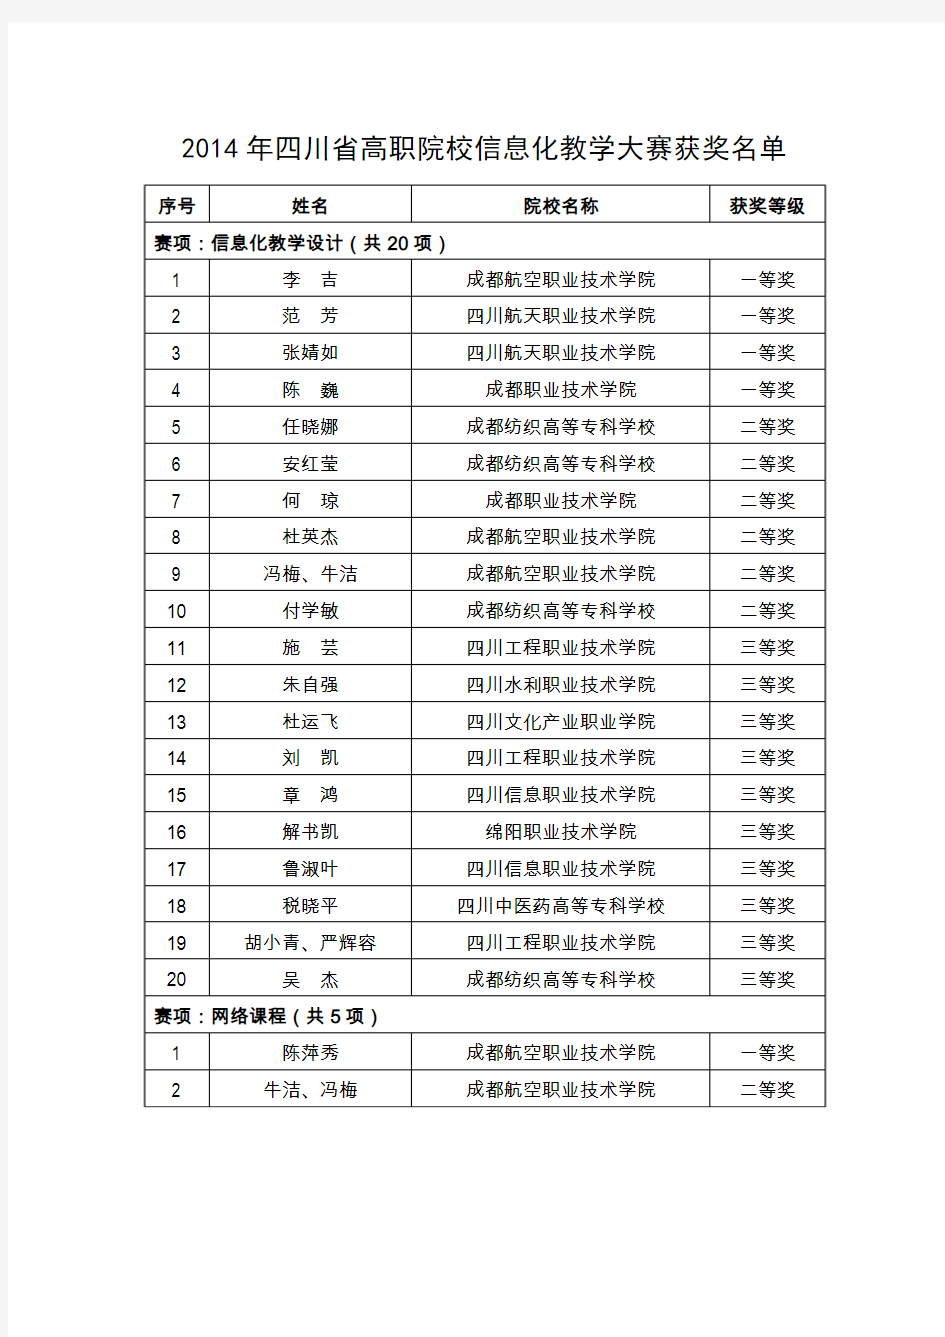 2014年四川省高等职业院校信息化教学大赛获奖名单